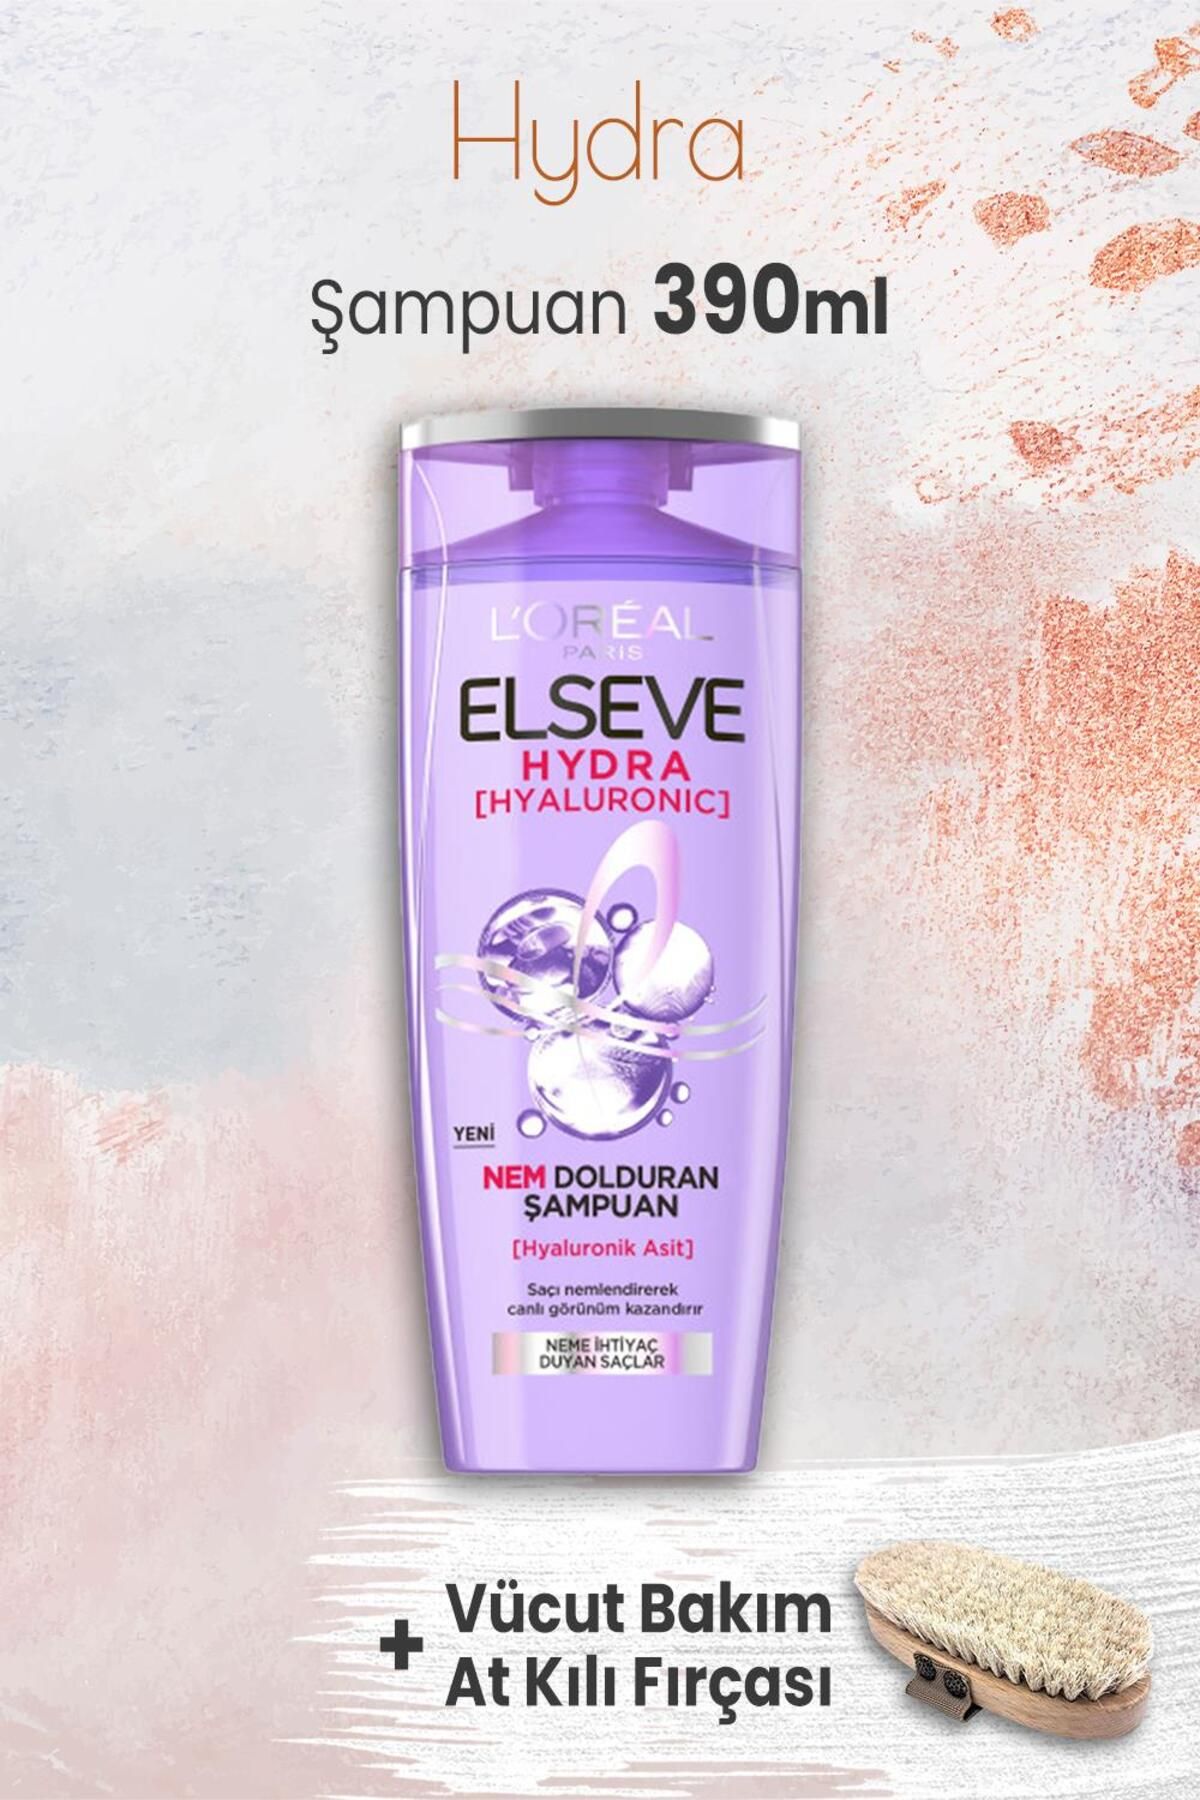 Elseve Hydra Hyaluronik Şampuan 390 ml Ve Vücut Bakımı At Kılı Fırçası